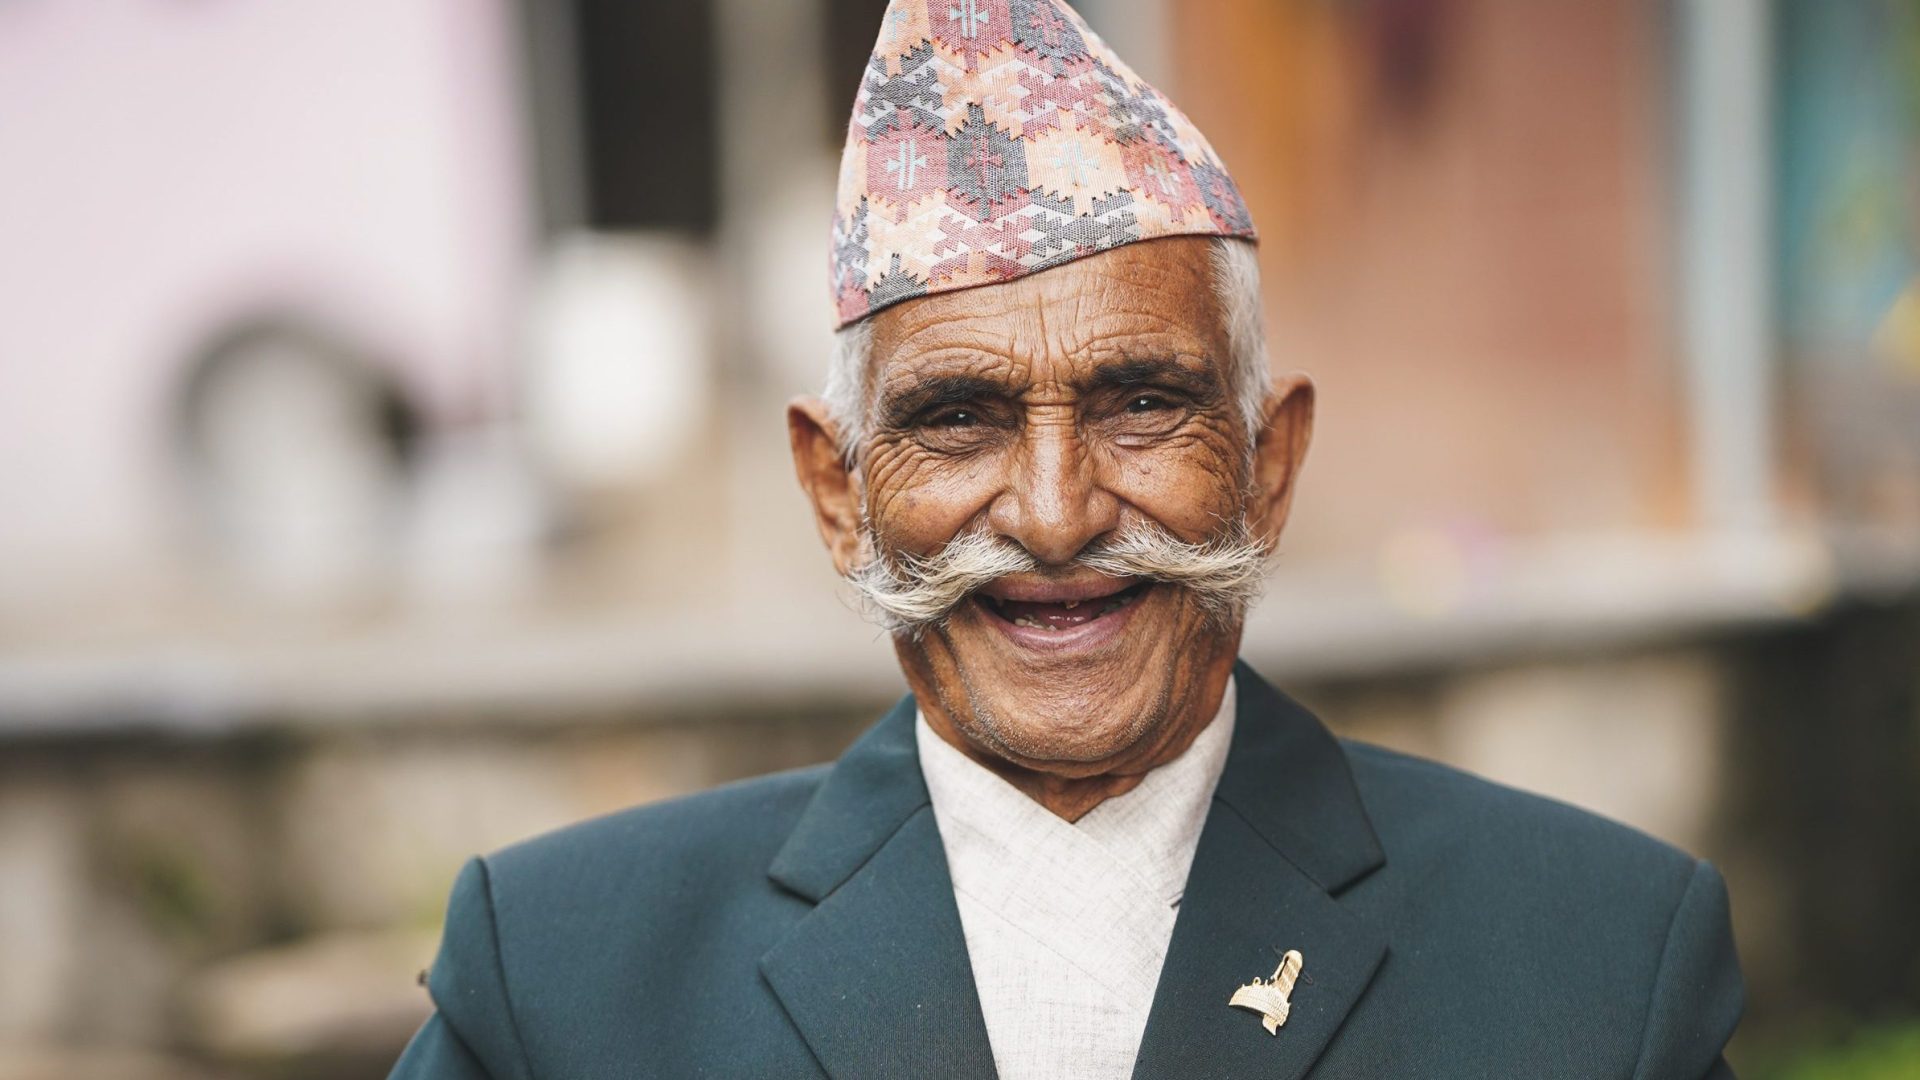 olde rman in Nepal - Shivaji Bista,86